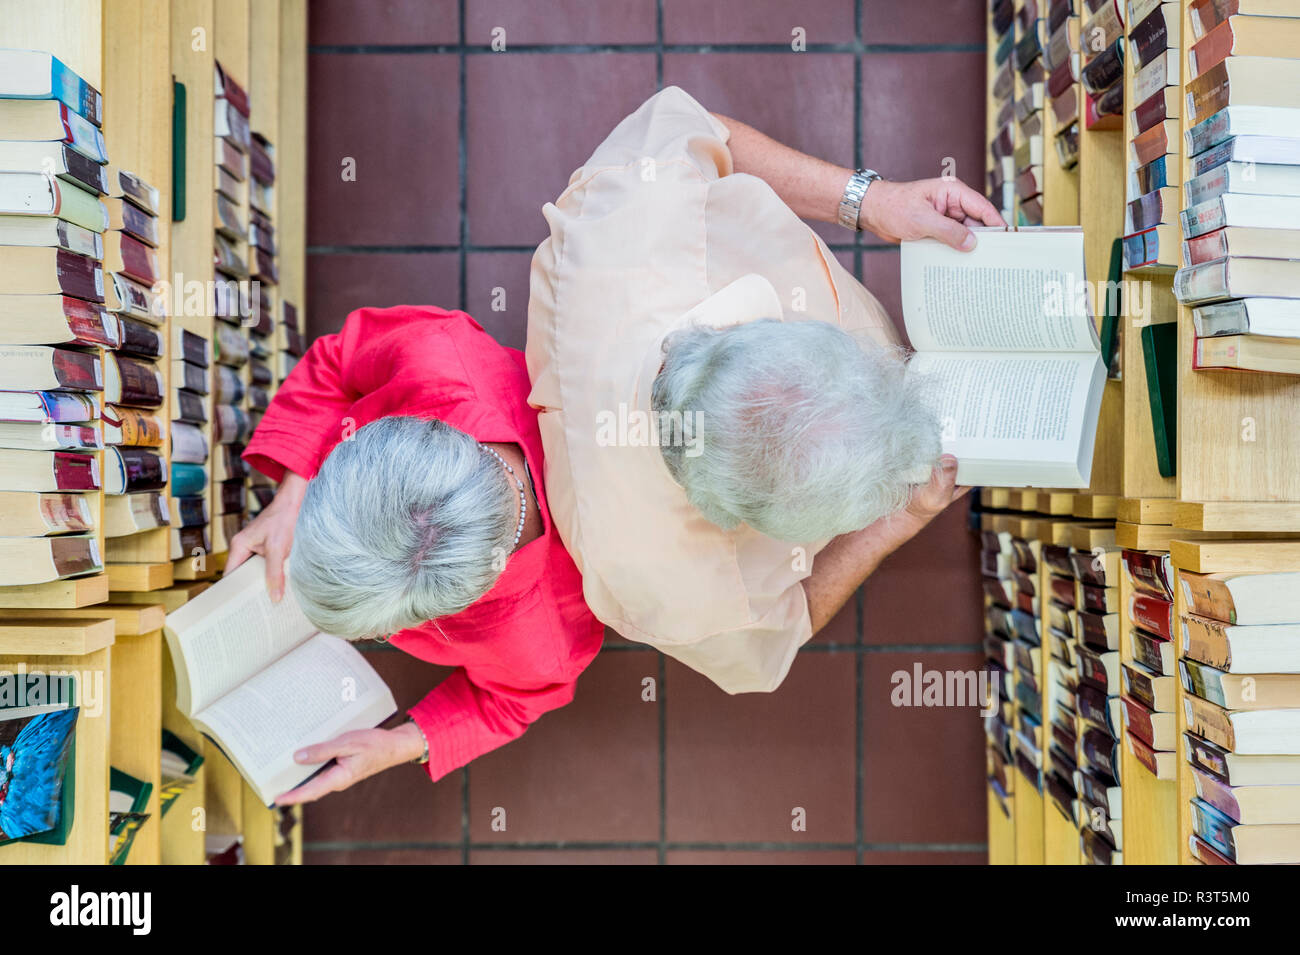 Ein Senior und eine Seniorin stehen Rücken un Rücken zwischen Bücherregalen. Draufsicht. Grevenbroich, Nordrhein-Westfalen, Deutschland Foto Stock